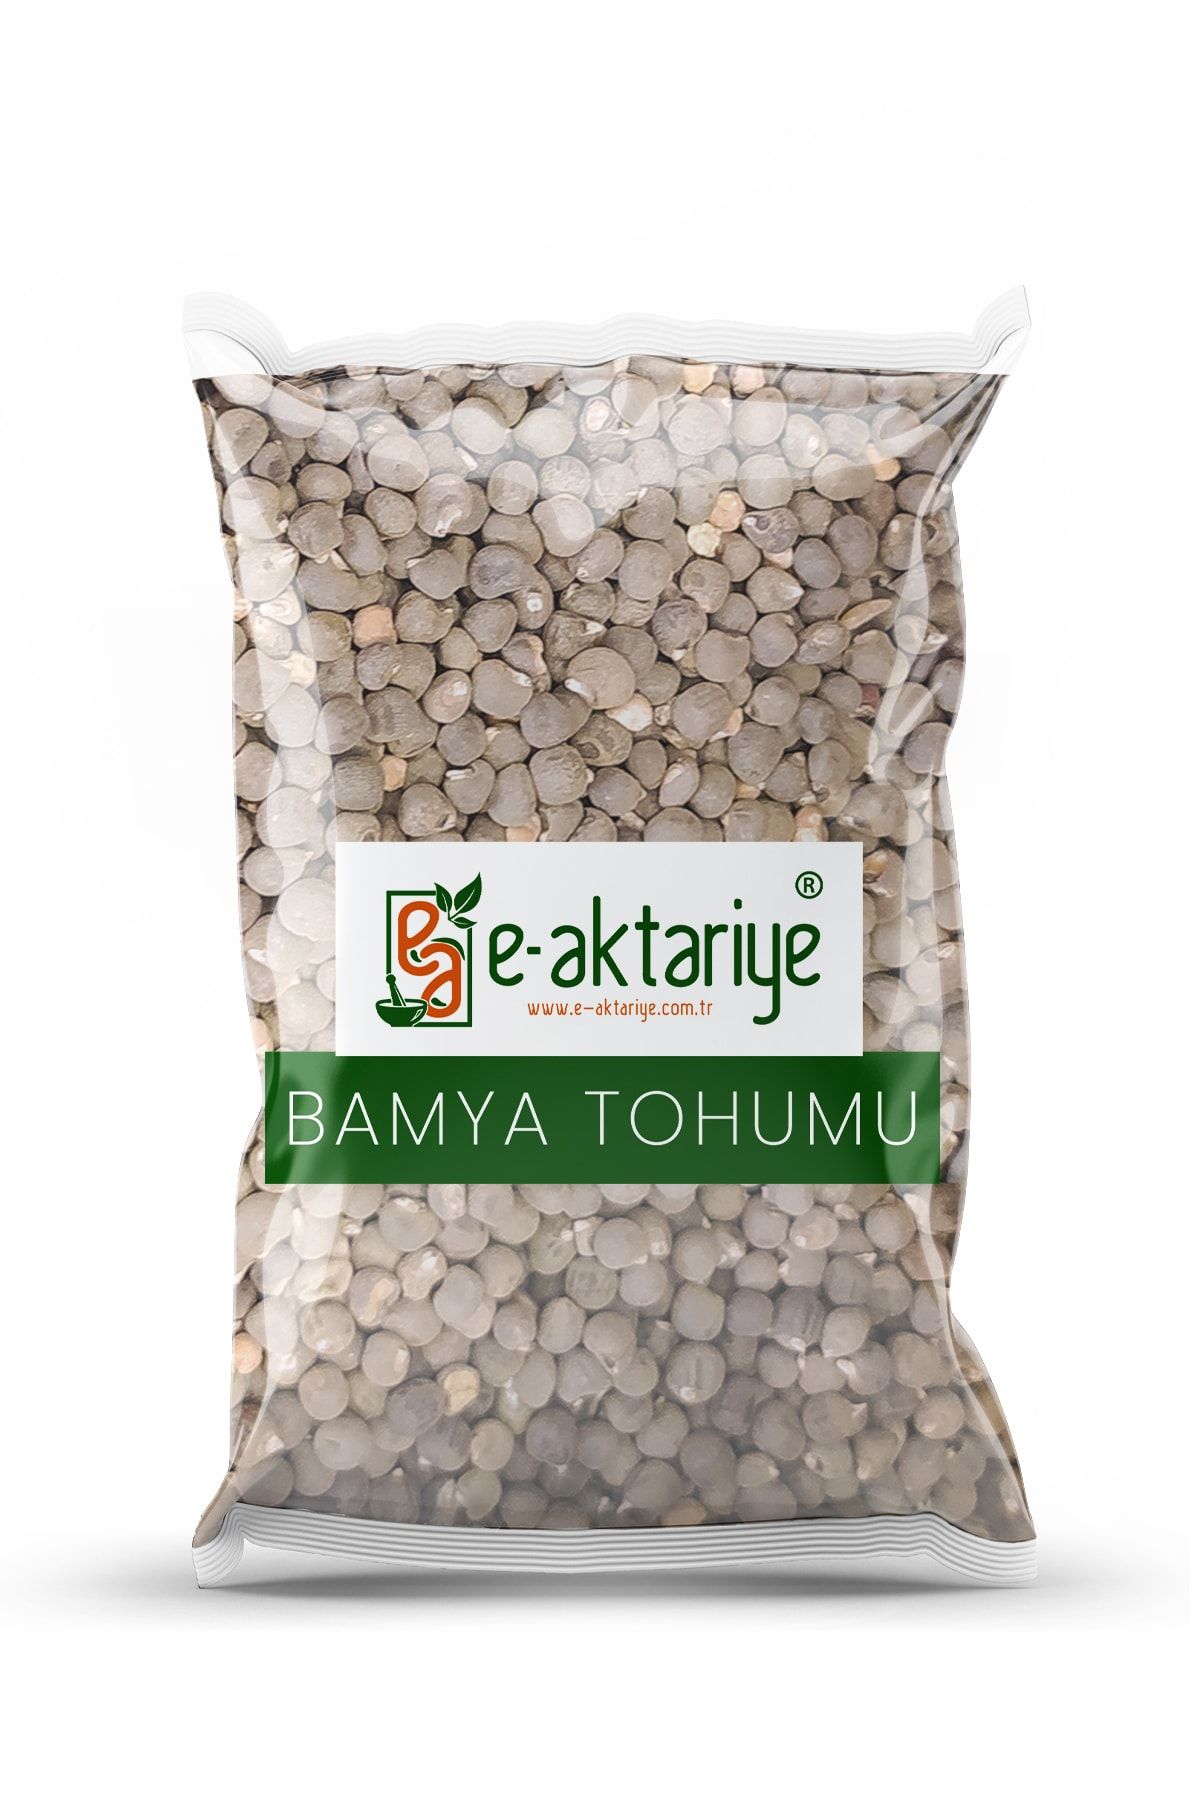 Eaktariye Ilaçsız Yenilebilir Yerli Bamya Tohumu 250 gr